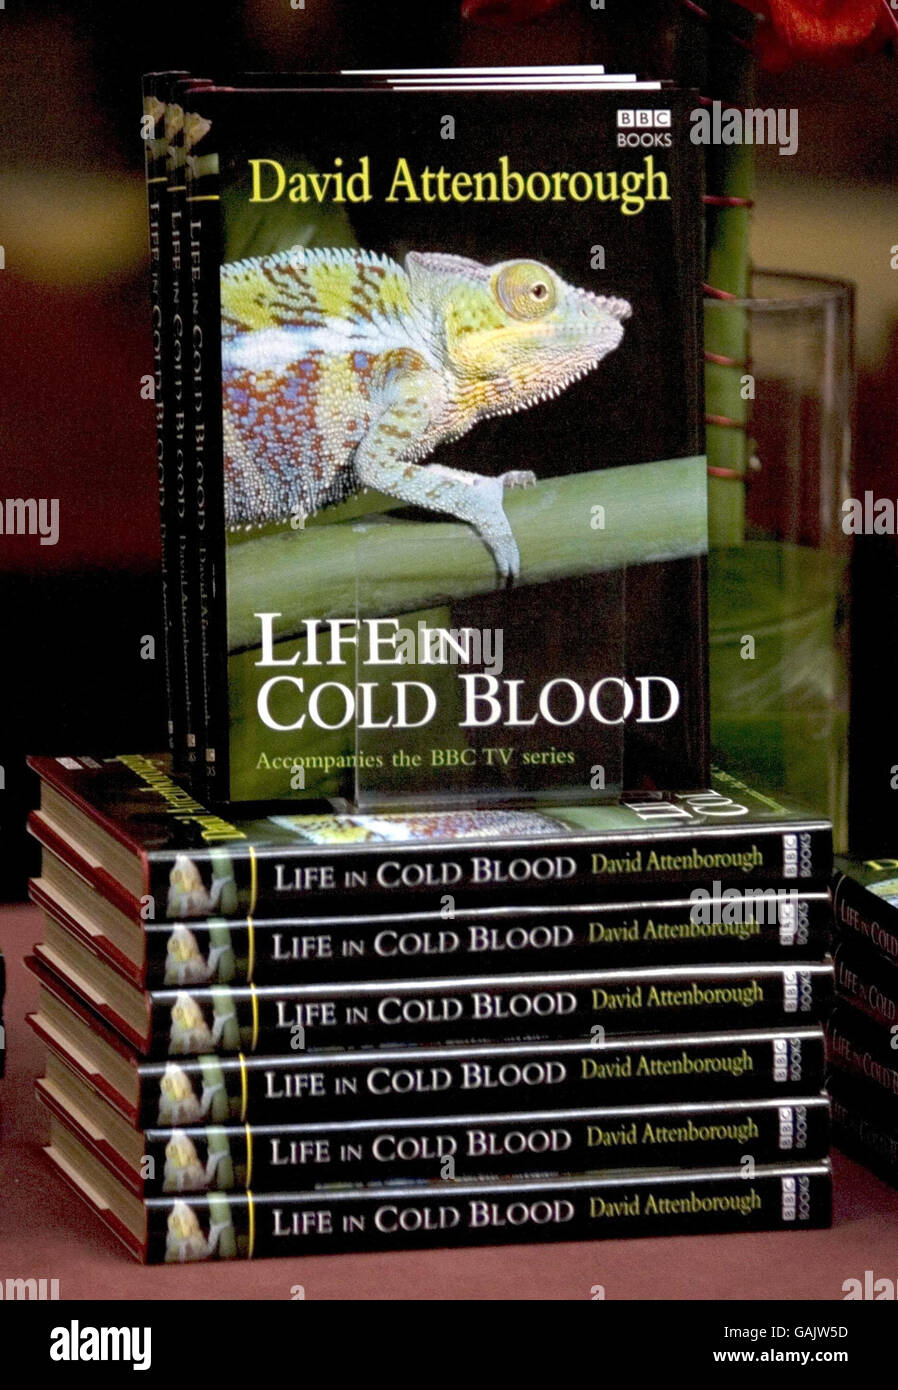 Copies de la vie dans le sang froid, qui accompagne le programme de télévision du même nom, au Musée d'histoire naturelle du centre de Londres. Banque D'Images